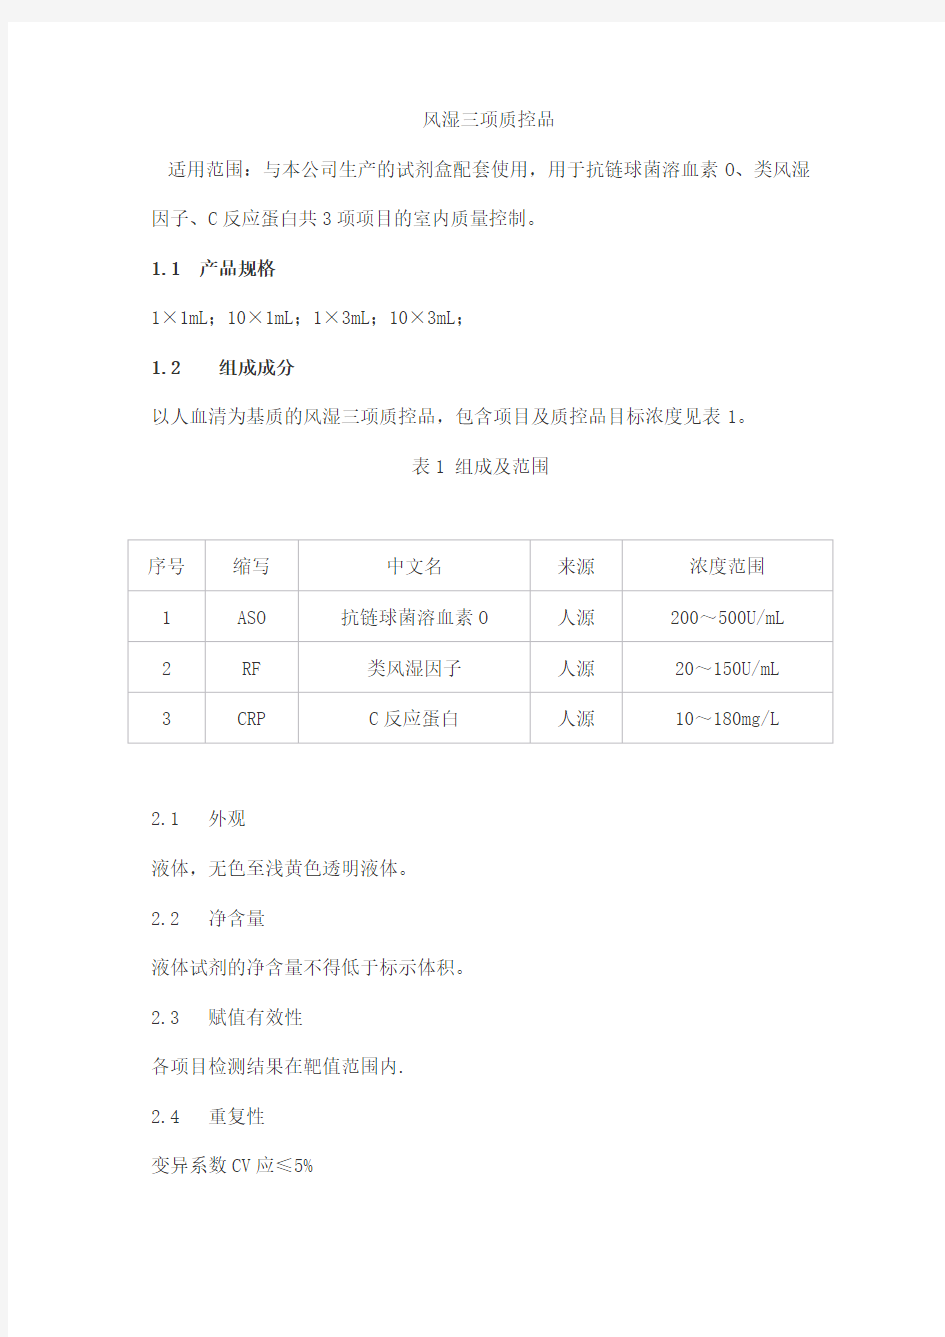 风湿三项质控品产品技术要求baiaotaikang